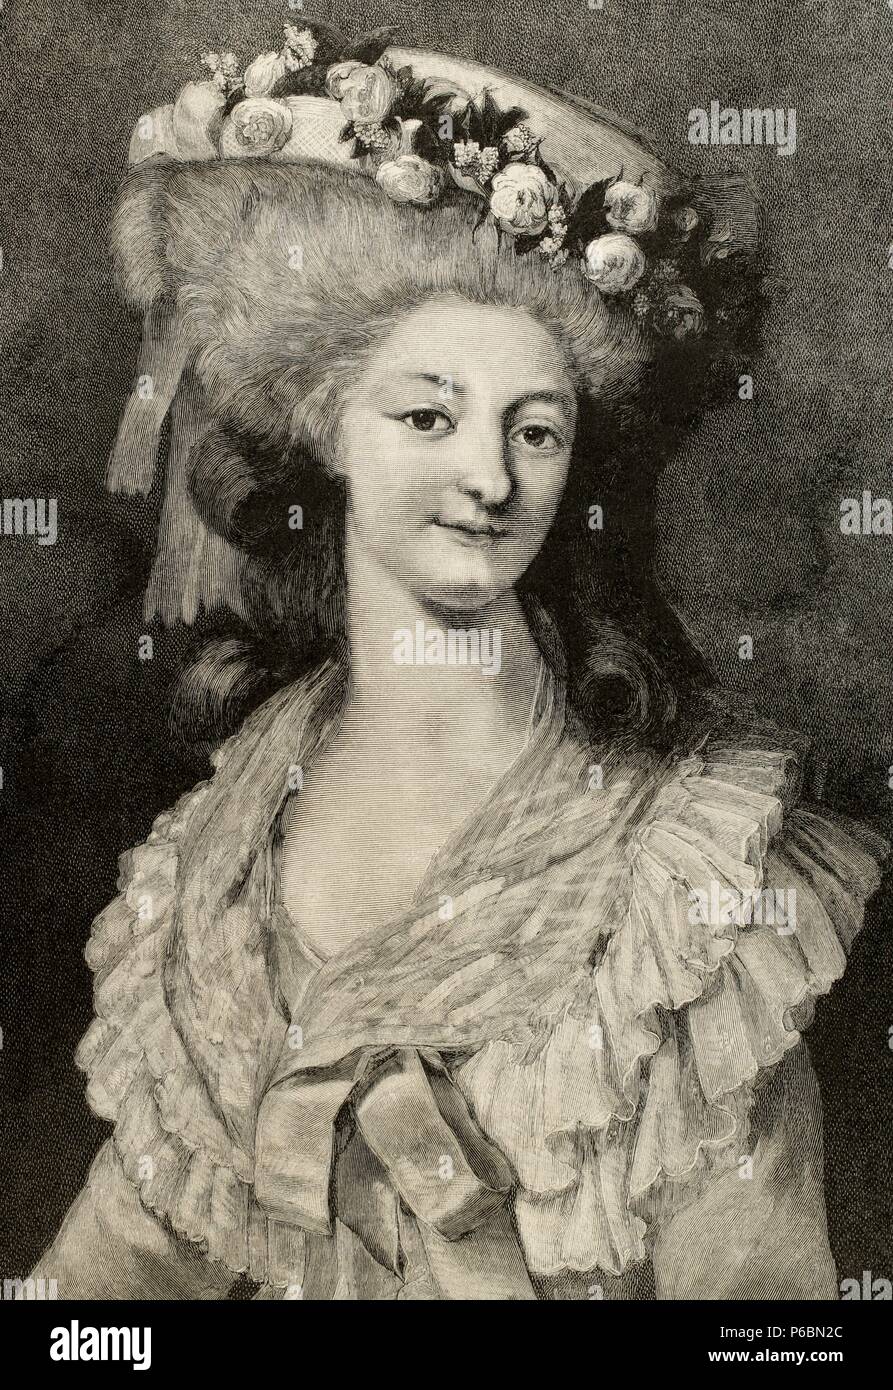 Prinzessin Marie Louise von Savoyen (1749-1792). Vertraute der Königin Marie Antoinette. Sie starben in der Massaker von September 1792 (französische Revolution). Kupferstich von CH. Baude "La Ilustracion Espanola y Americana", 1889. Stockfoto